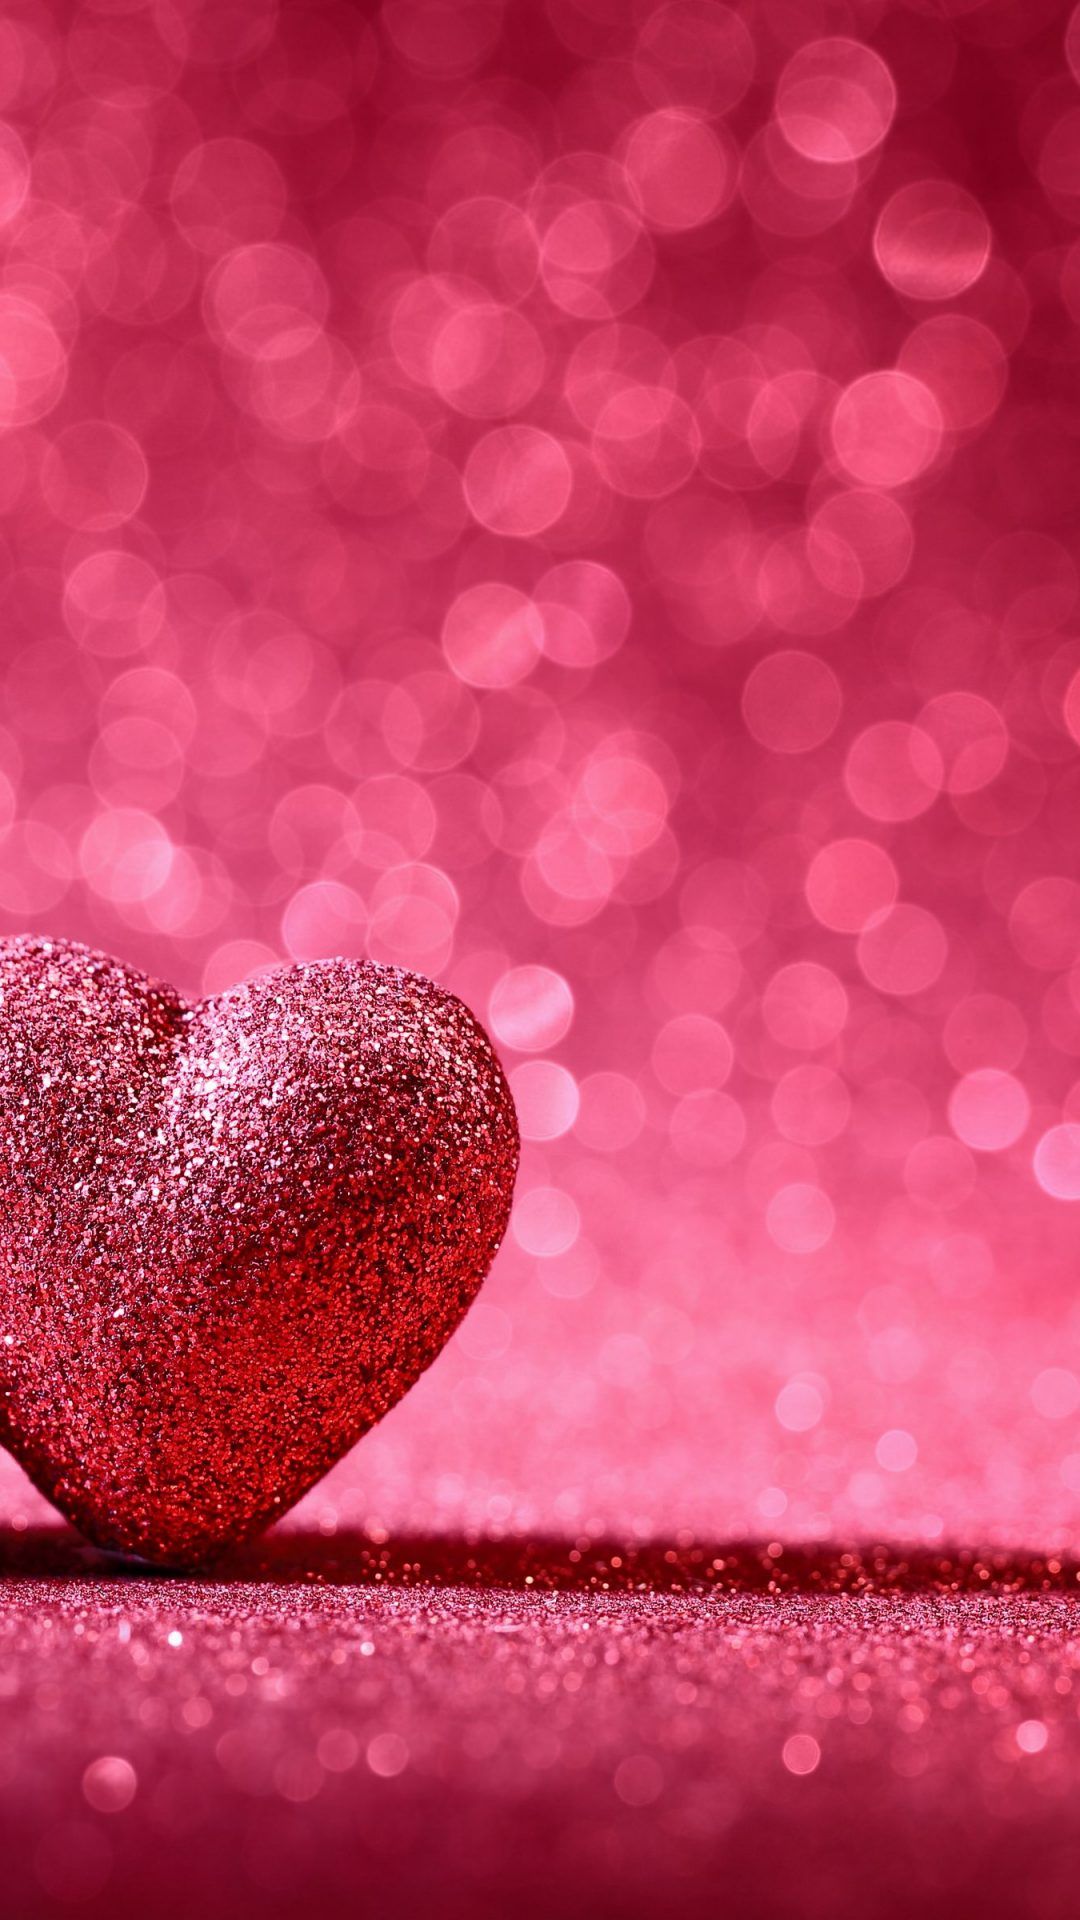 愛画像壁紙,心臓,ピンク,赤,愛,きらめき